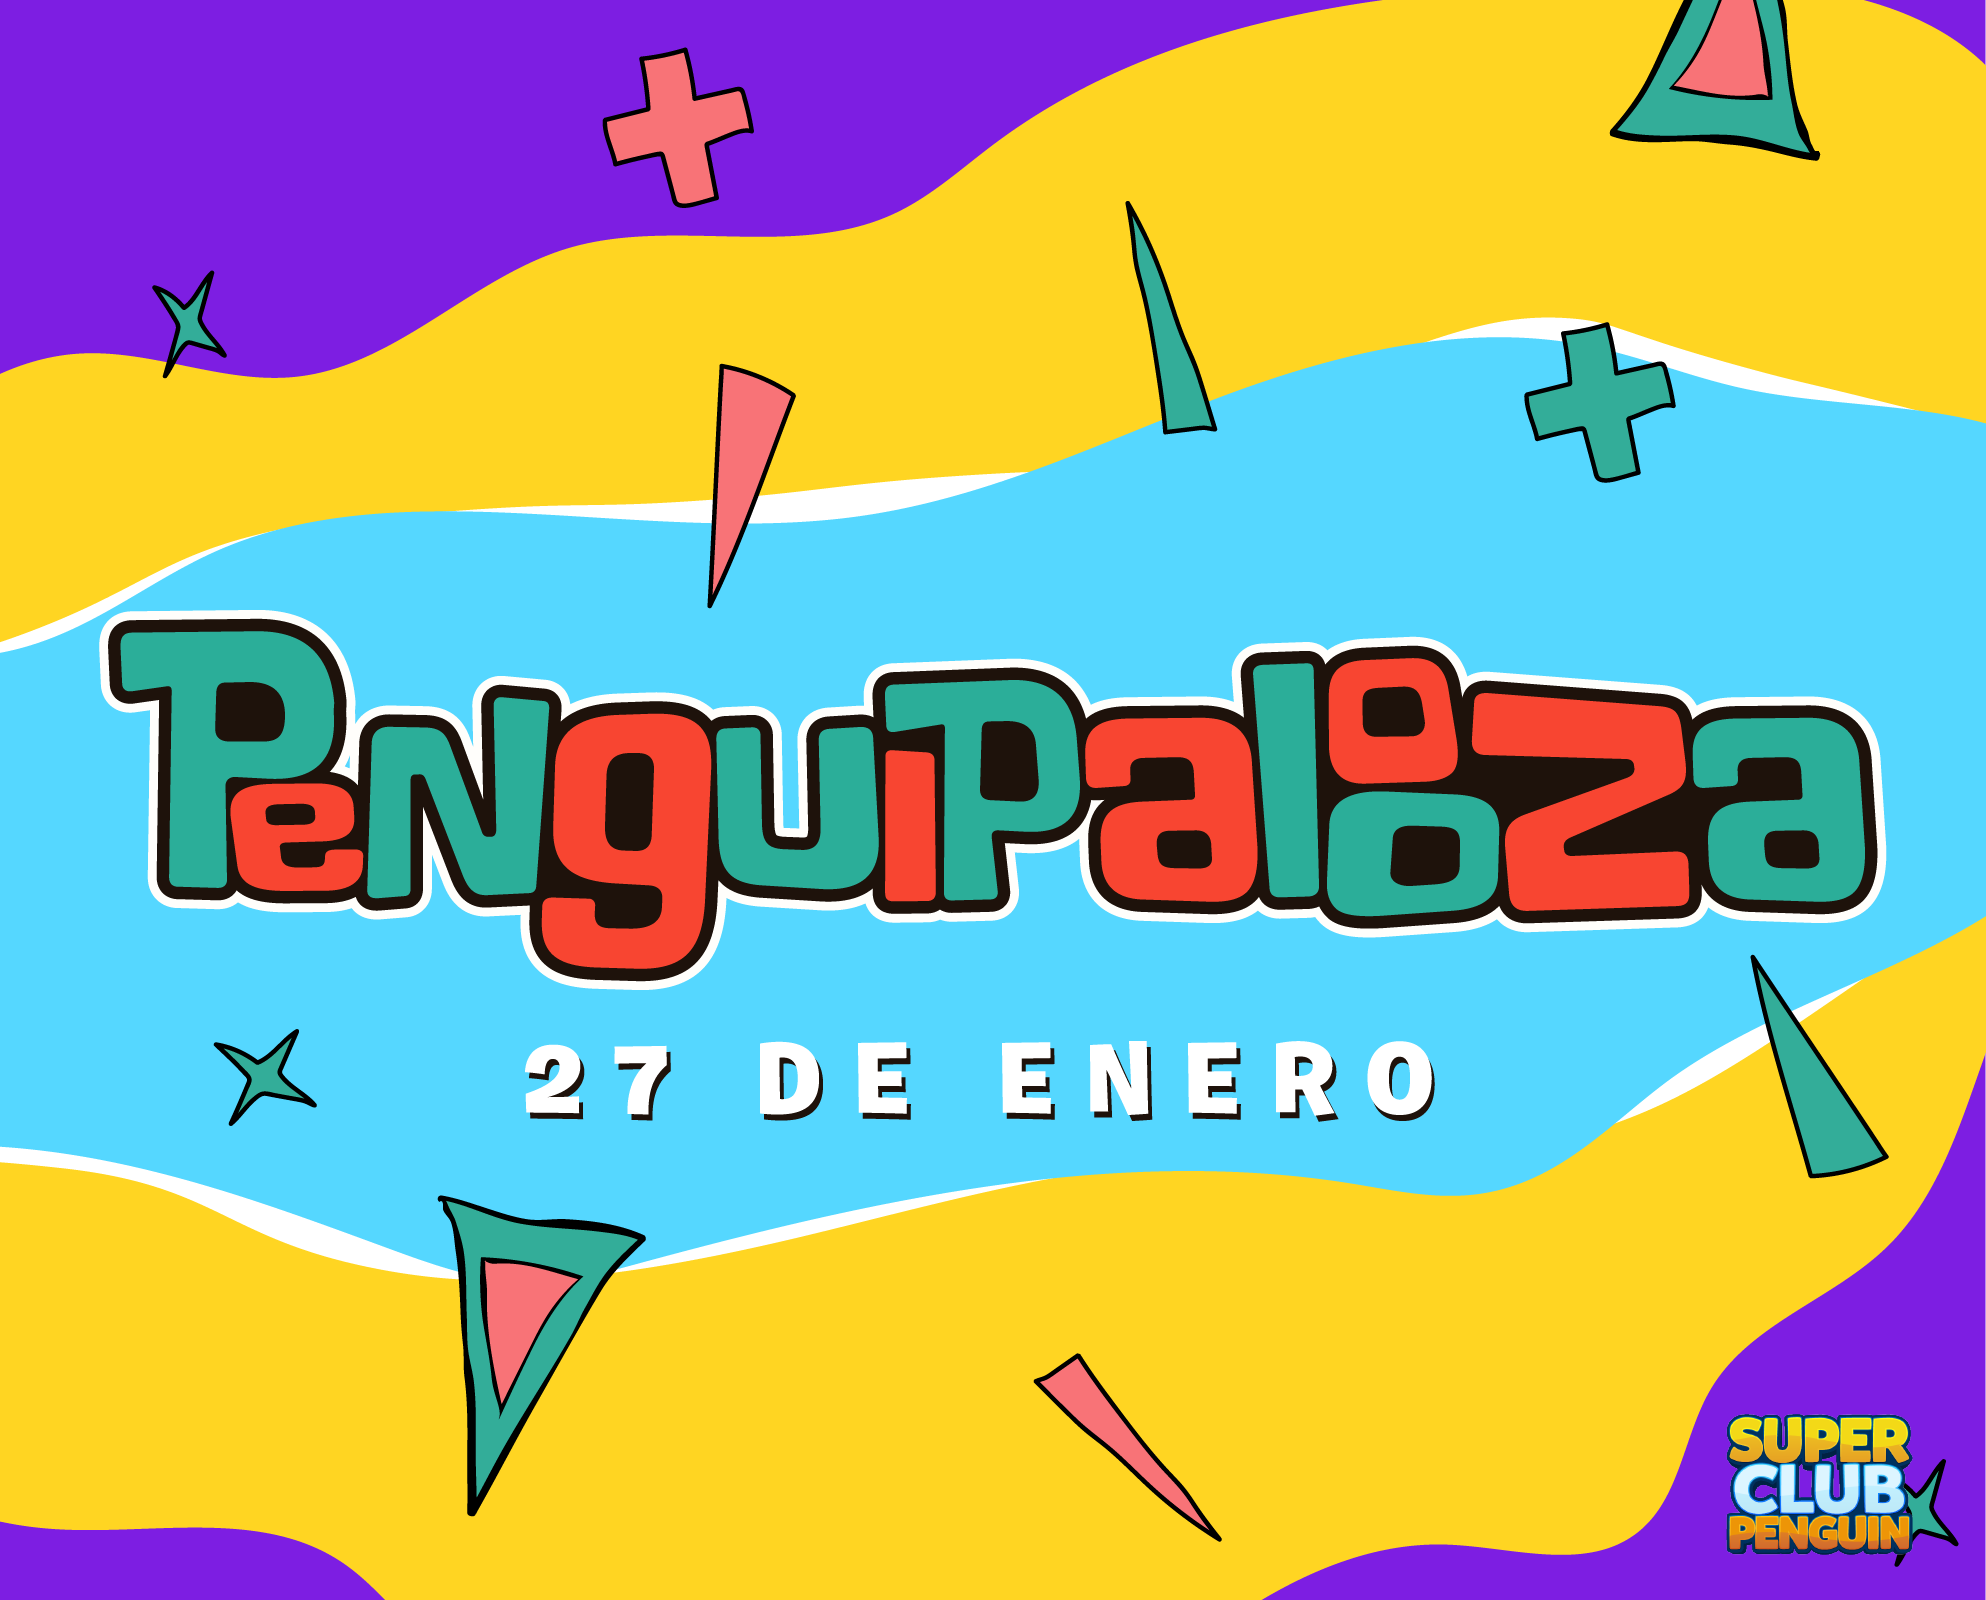 El Penguipalooza se toma Super Club Penguin! | Novedades | Super Club  Penguin